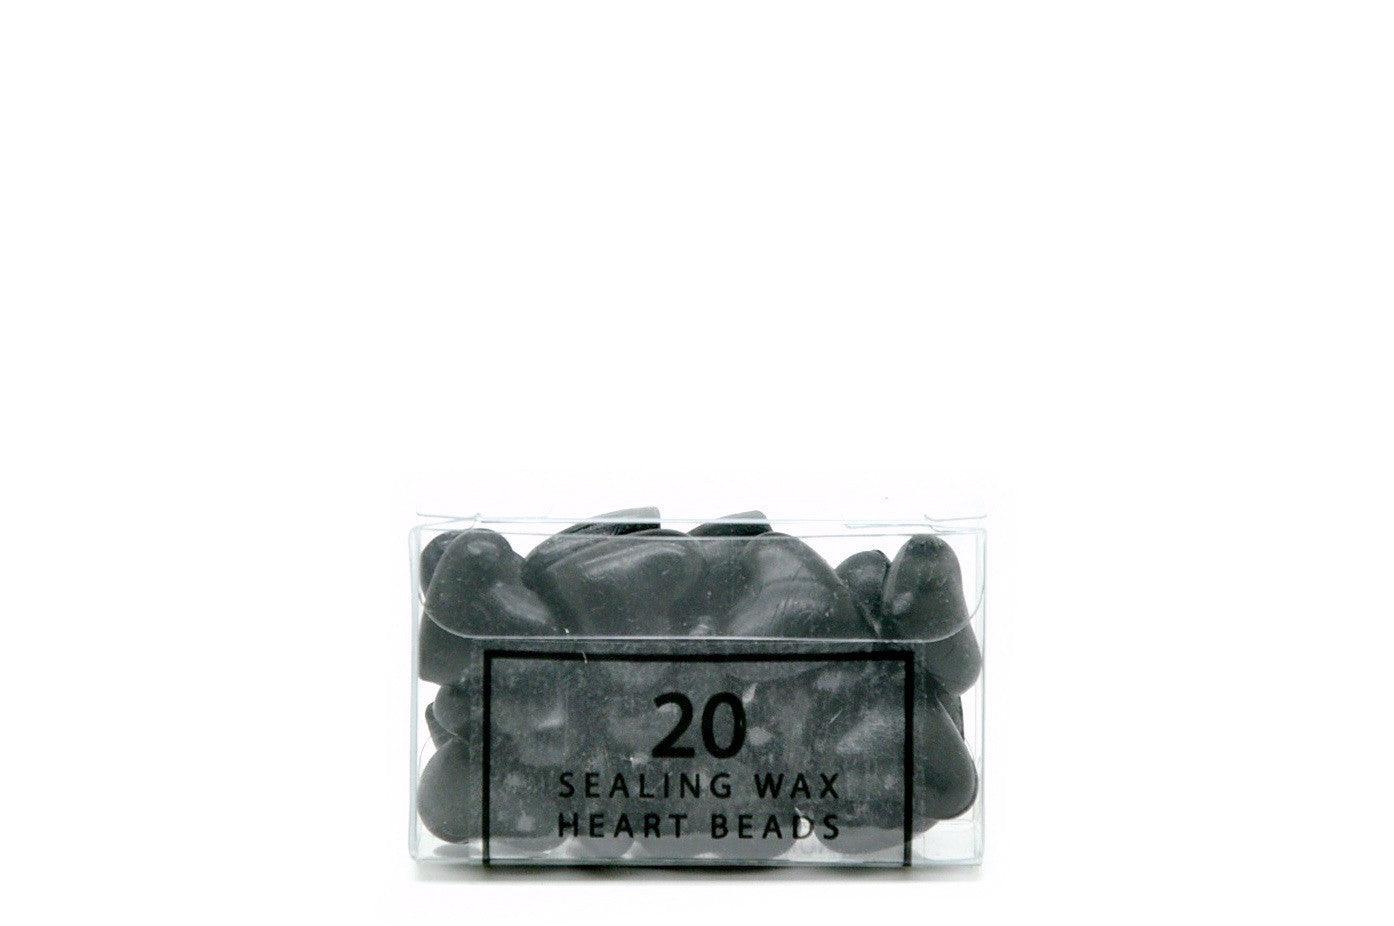 Black Sealing Wax Heart Bead - Backtozero B20 - Black, Heart Bead, Heart Wax, sale, Sealing Wax, Wax Bead